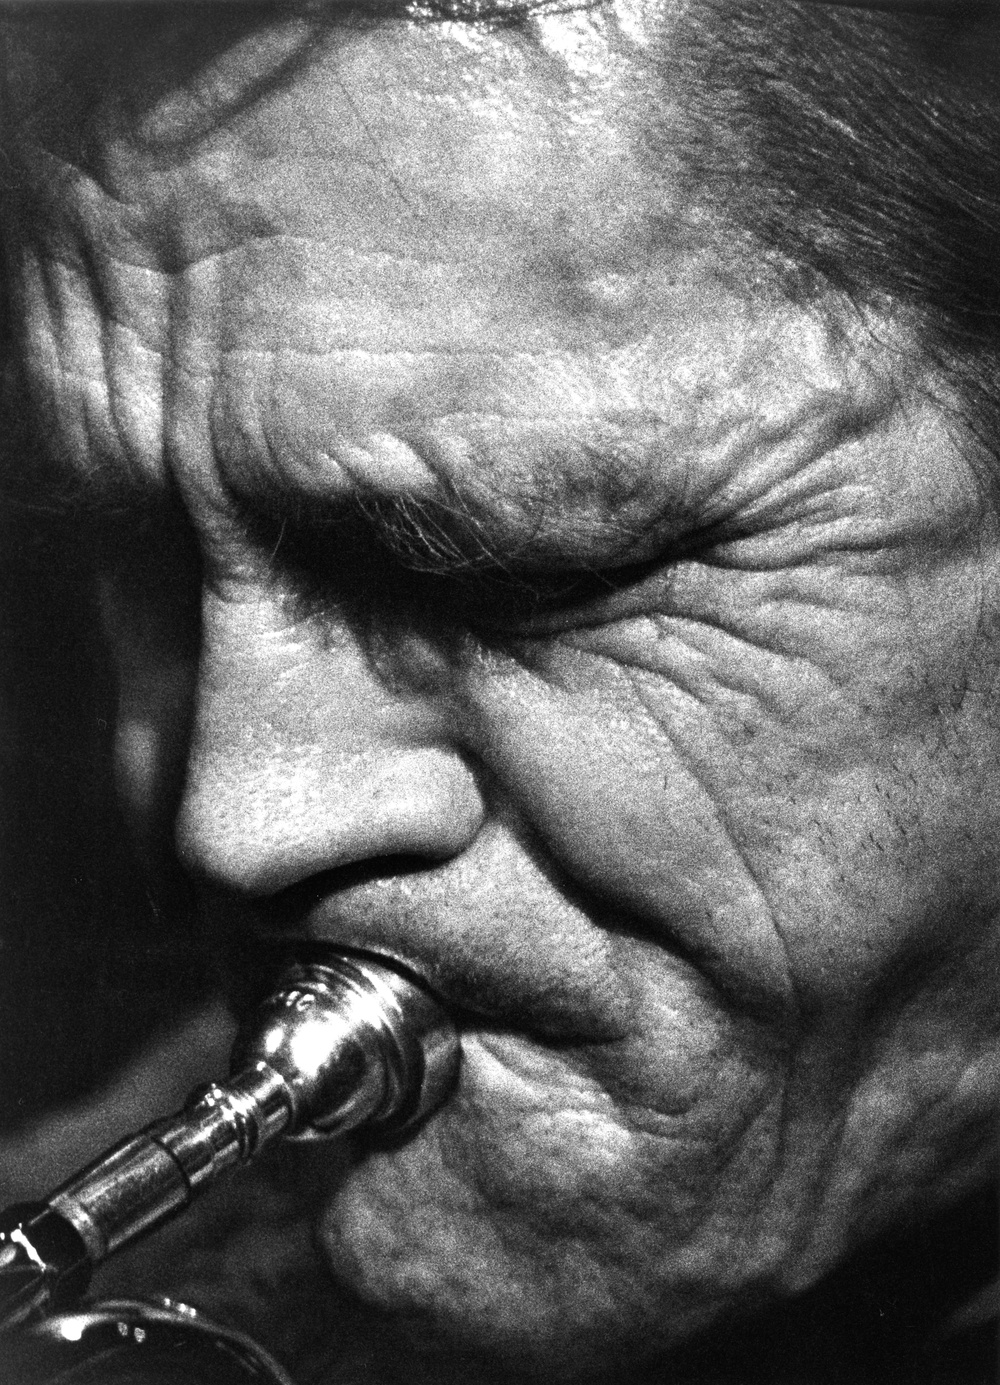 Svartvit närbild på Chet Bakers ansikte spelande på trumpet, ansiktet är vänt till höger i bild och ögonen är slutna.